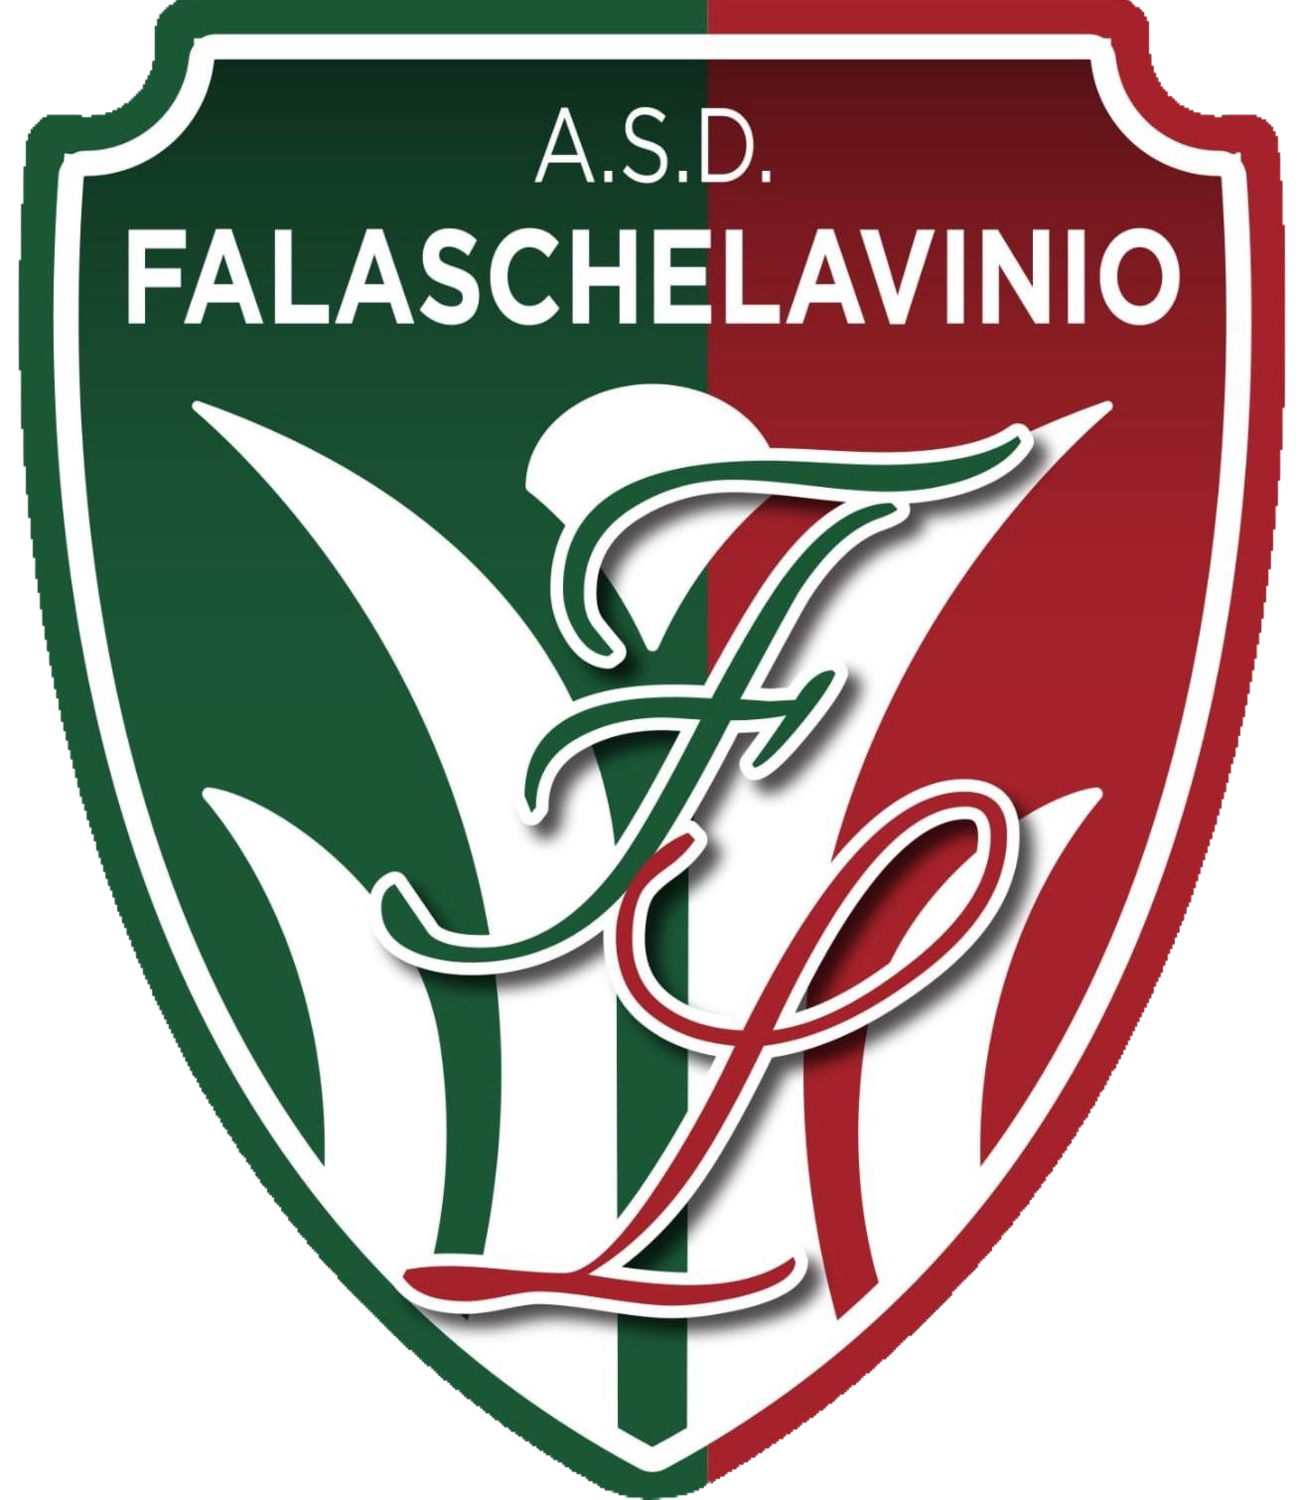 Wappen ASD Falaschelavinio